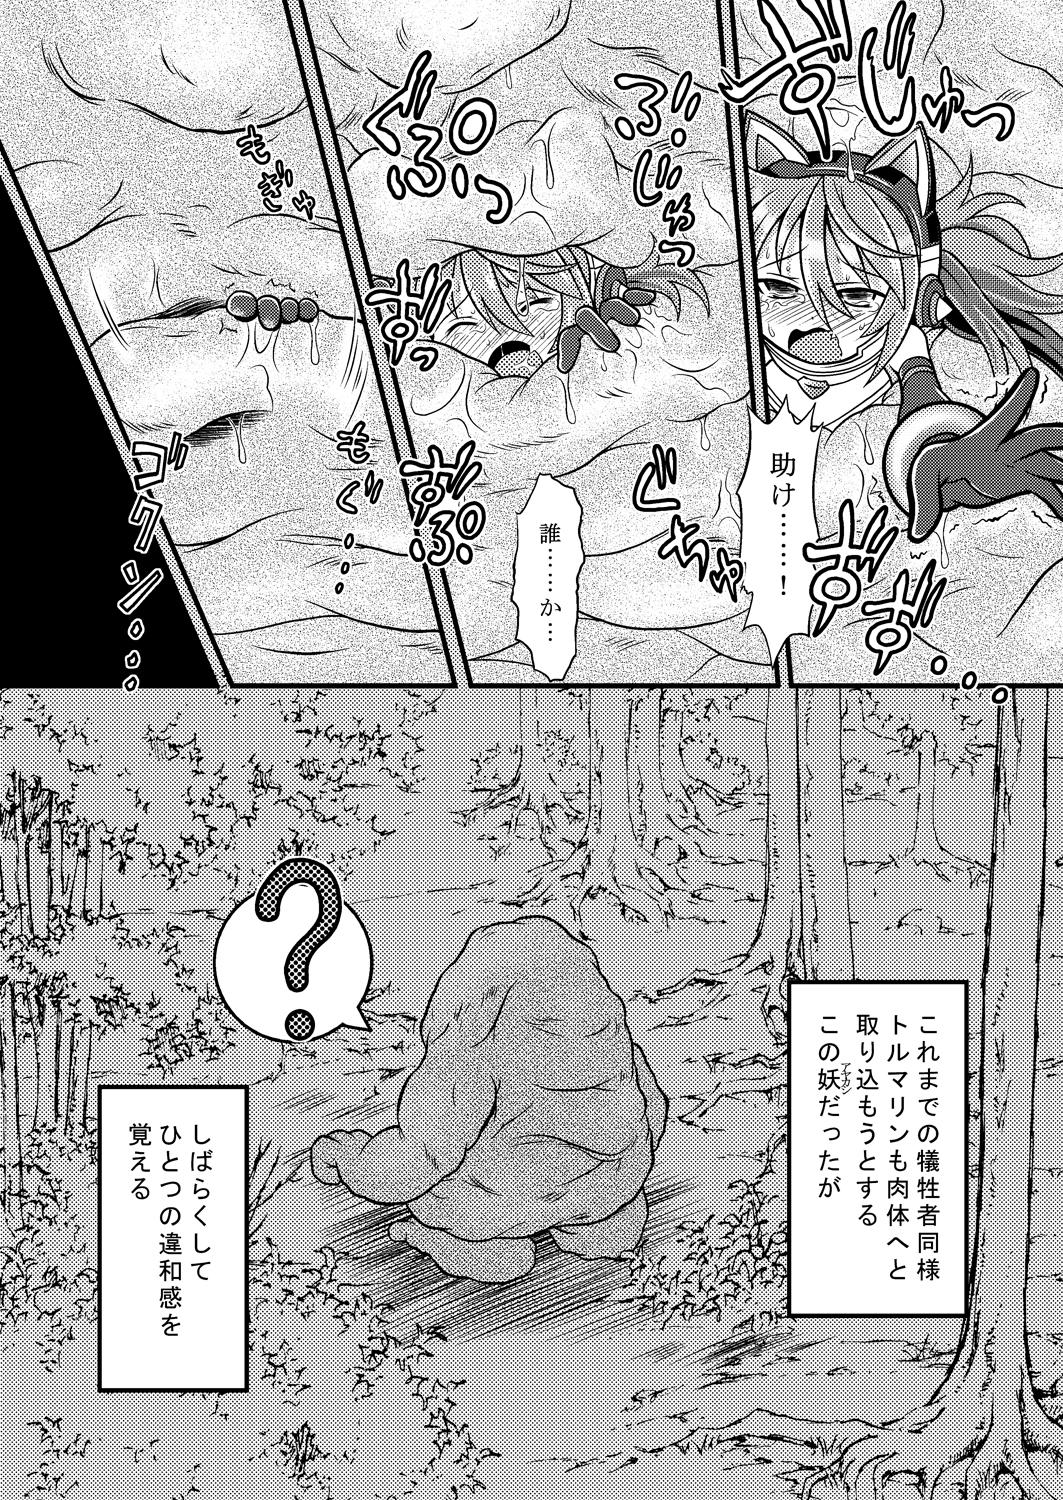 Footfetish Torumarin-zuke Kiryuusan - Shinrabansho Step Fantasy - Page 10